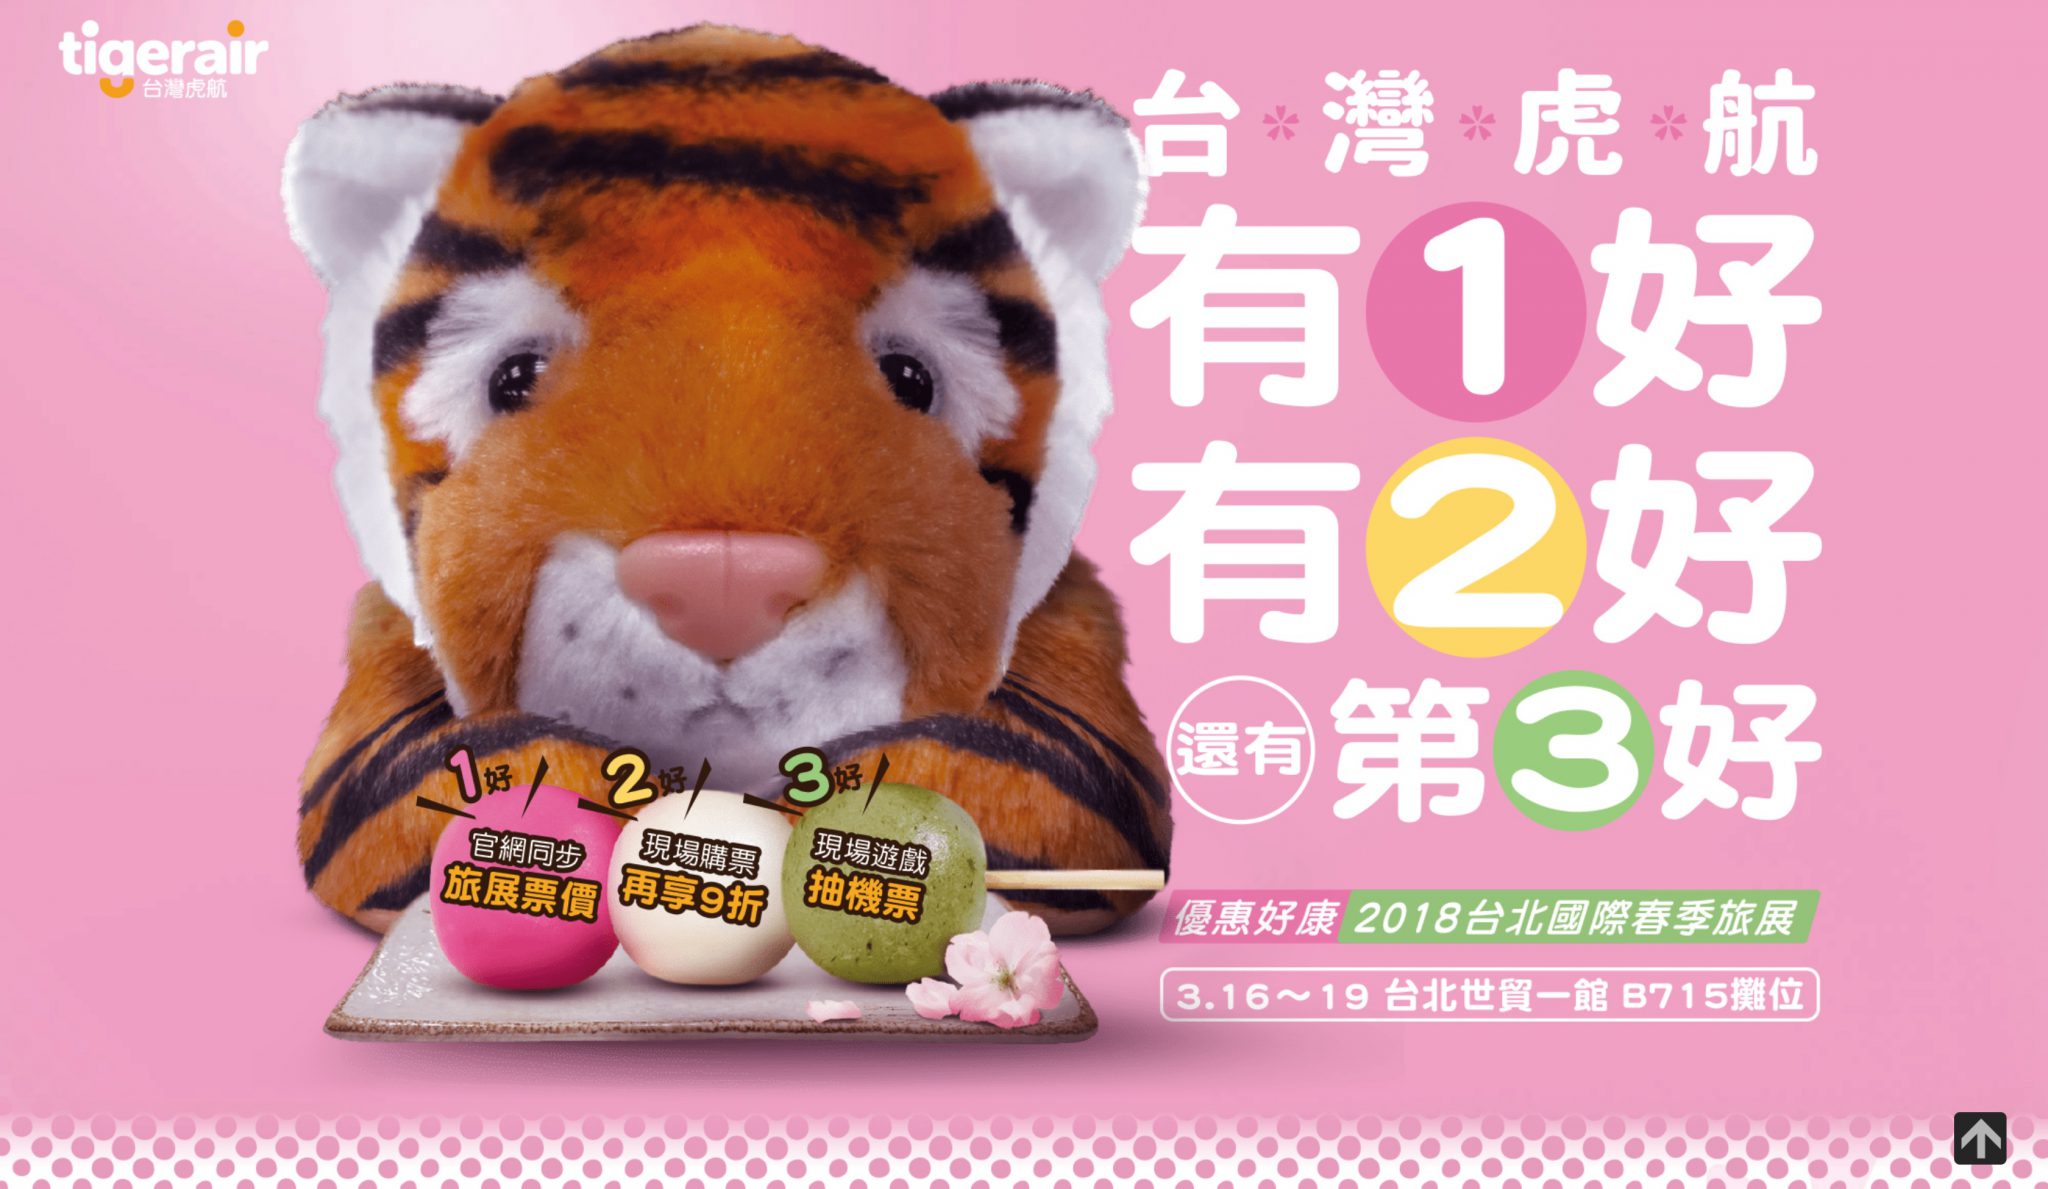 只要700元？台灣虎航「白色情人節+春季旅展」限時促銷帶大家出國玩樂 TigerAir Taiwan 2018STF Event Promotion